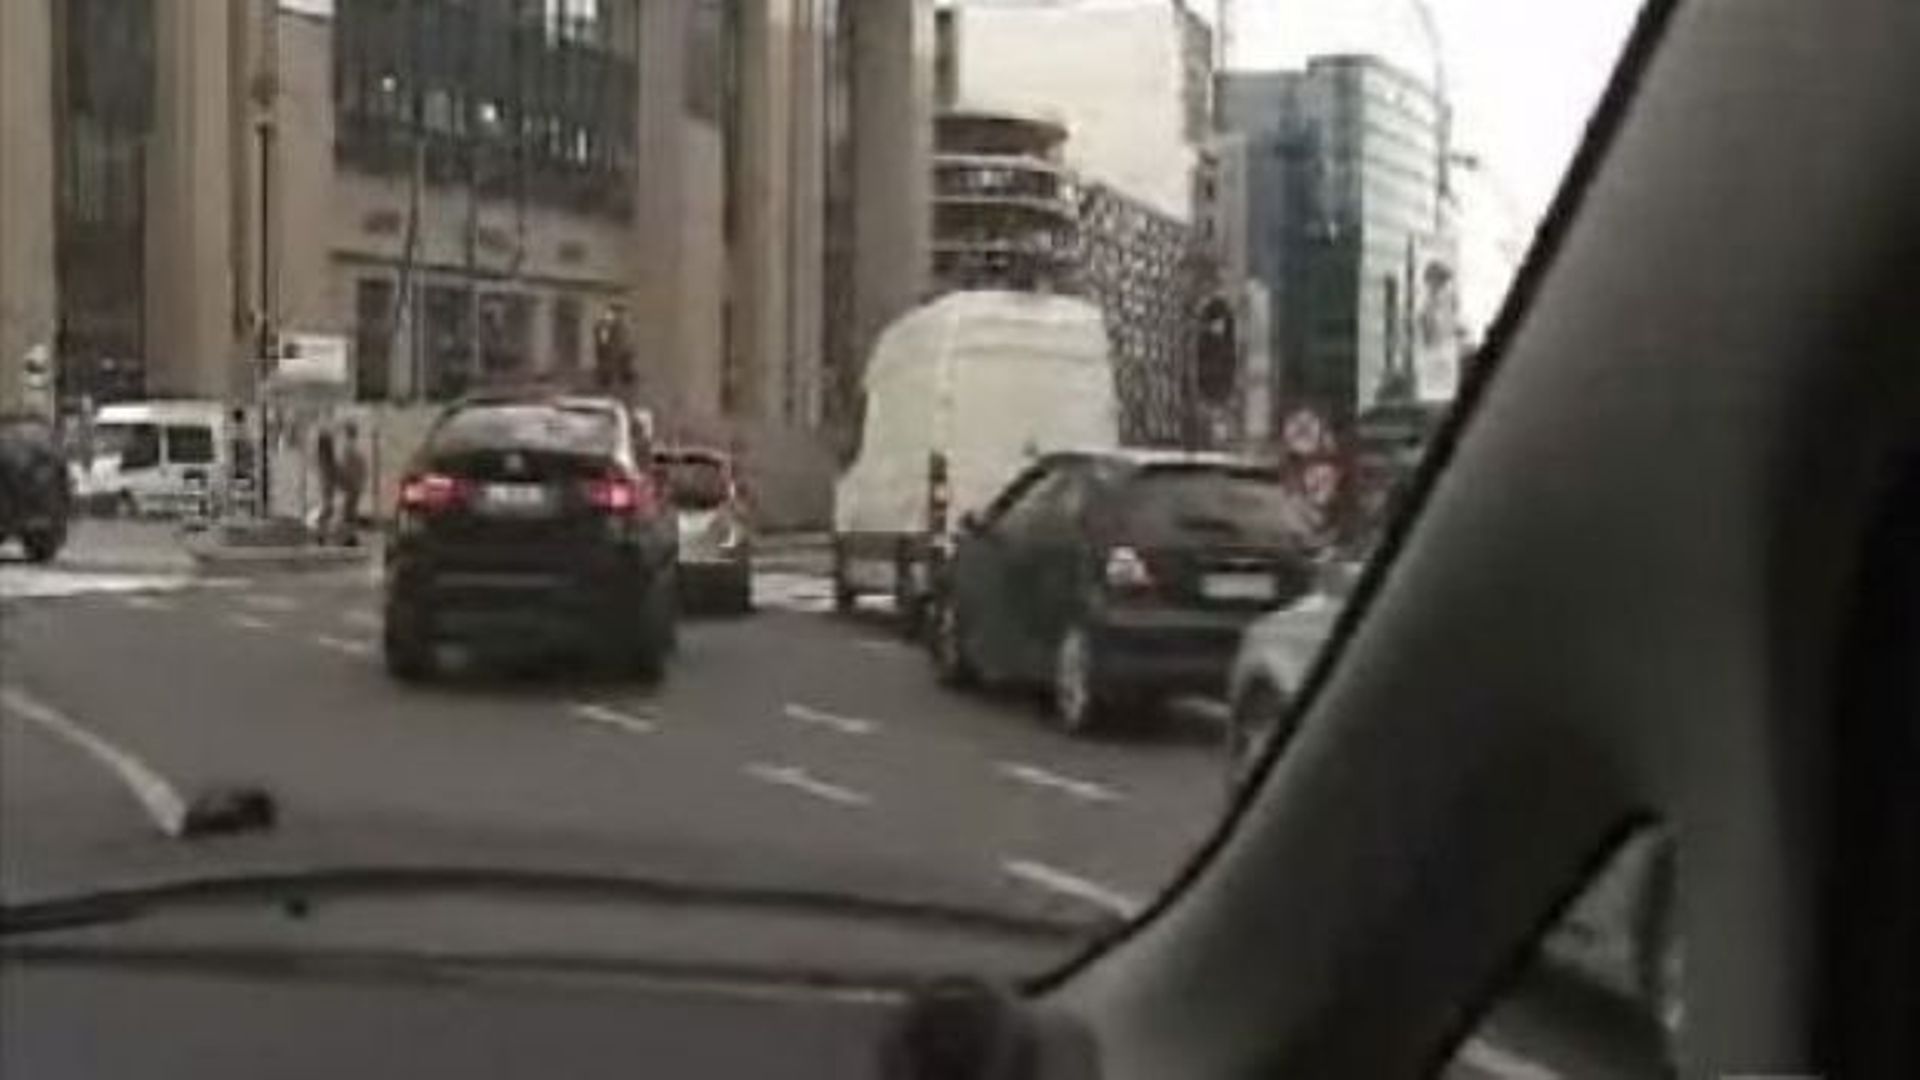 Bruxelles souffre toujours cruellement de congestion automobile